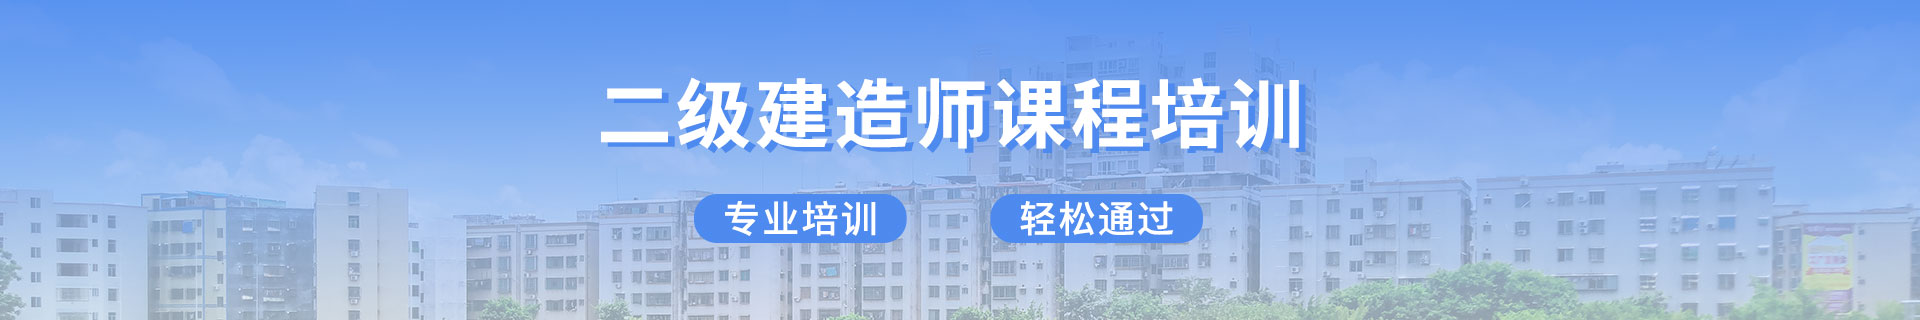 上海虹口优路教育培训学校